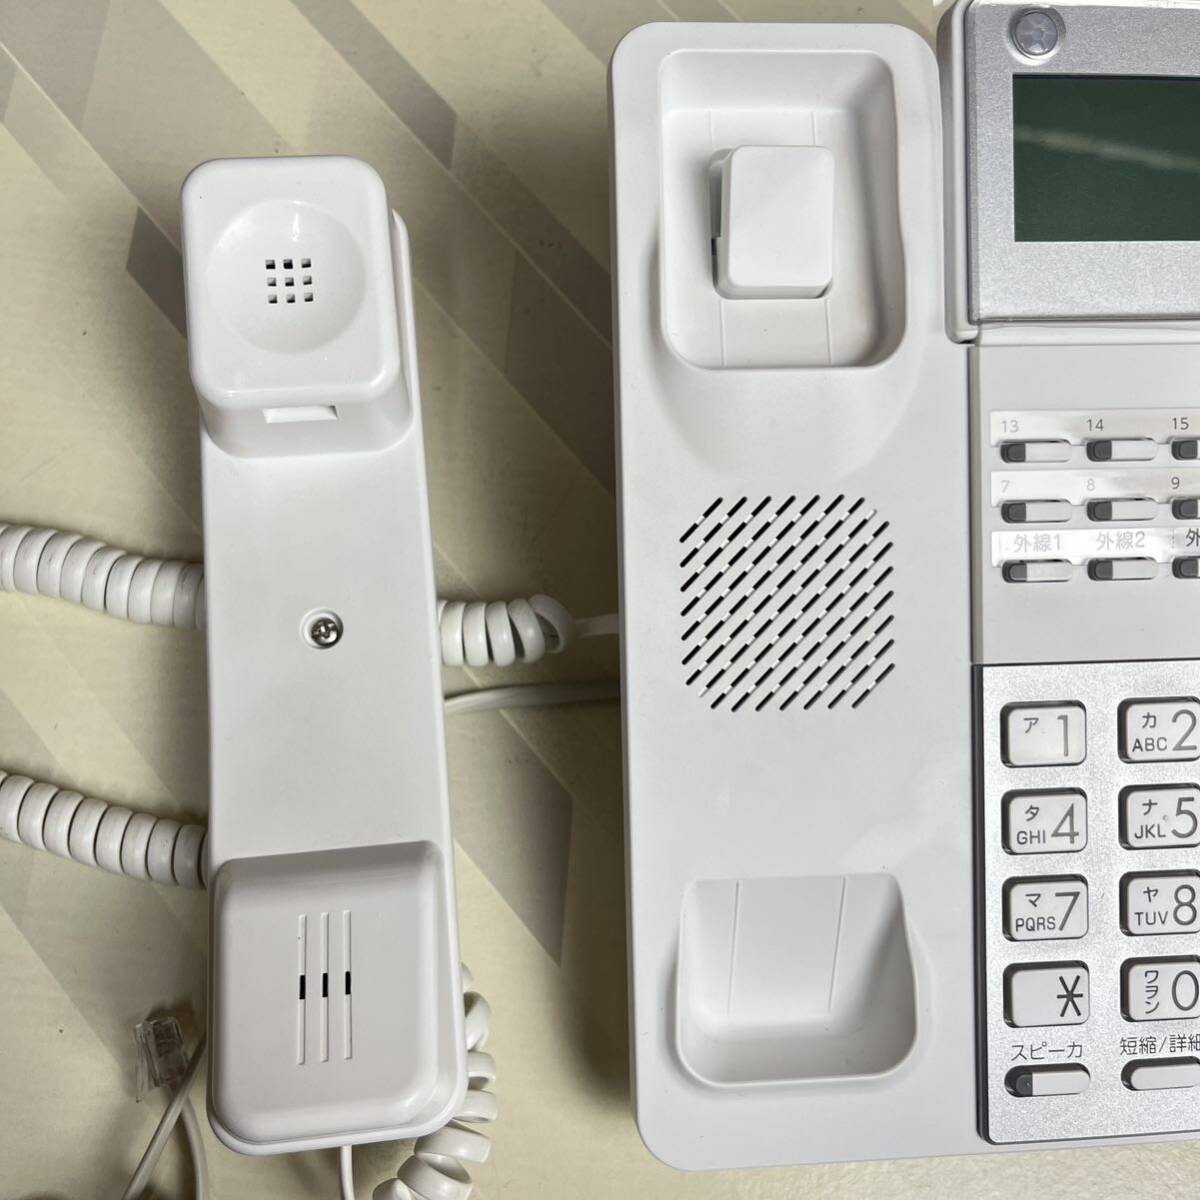 ③美品 SAXA サクサ PLATIA3 TD1010(W) 18ボタン多機能電話機 ビジネスホン 業務用電話機 ビジネスフォン 白